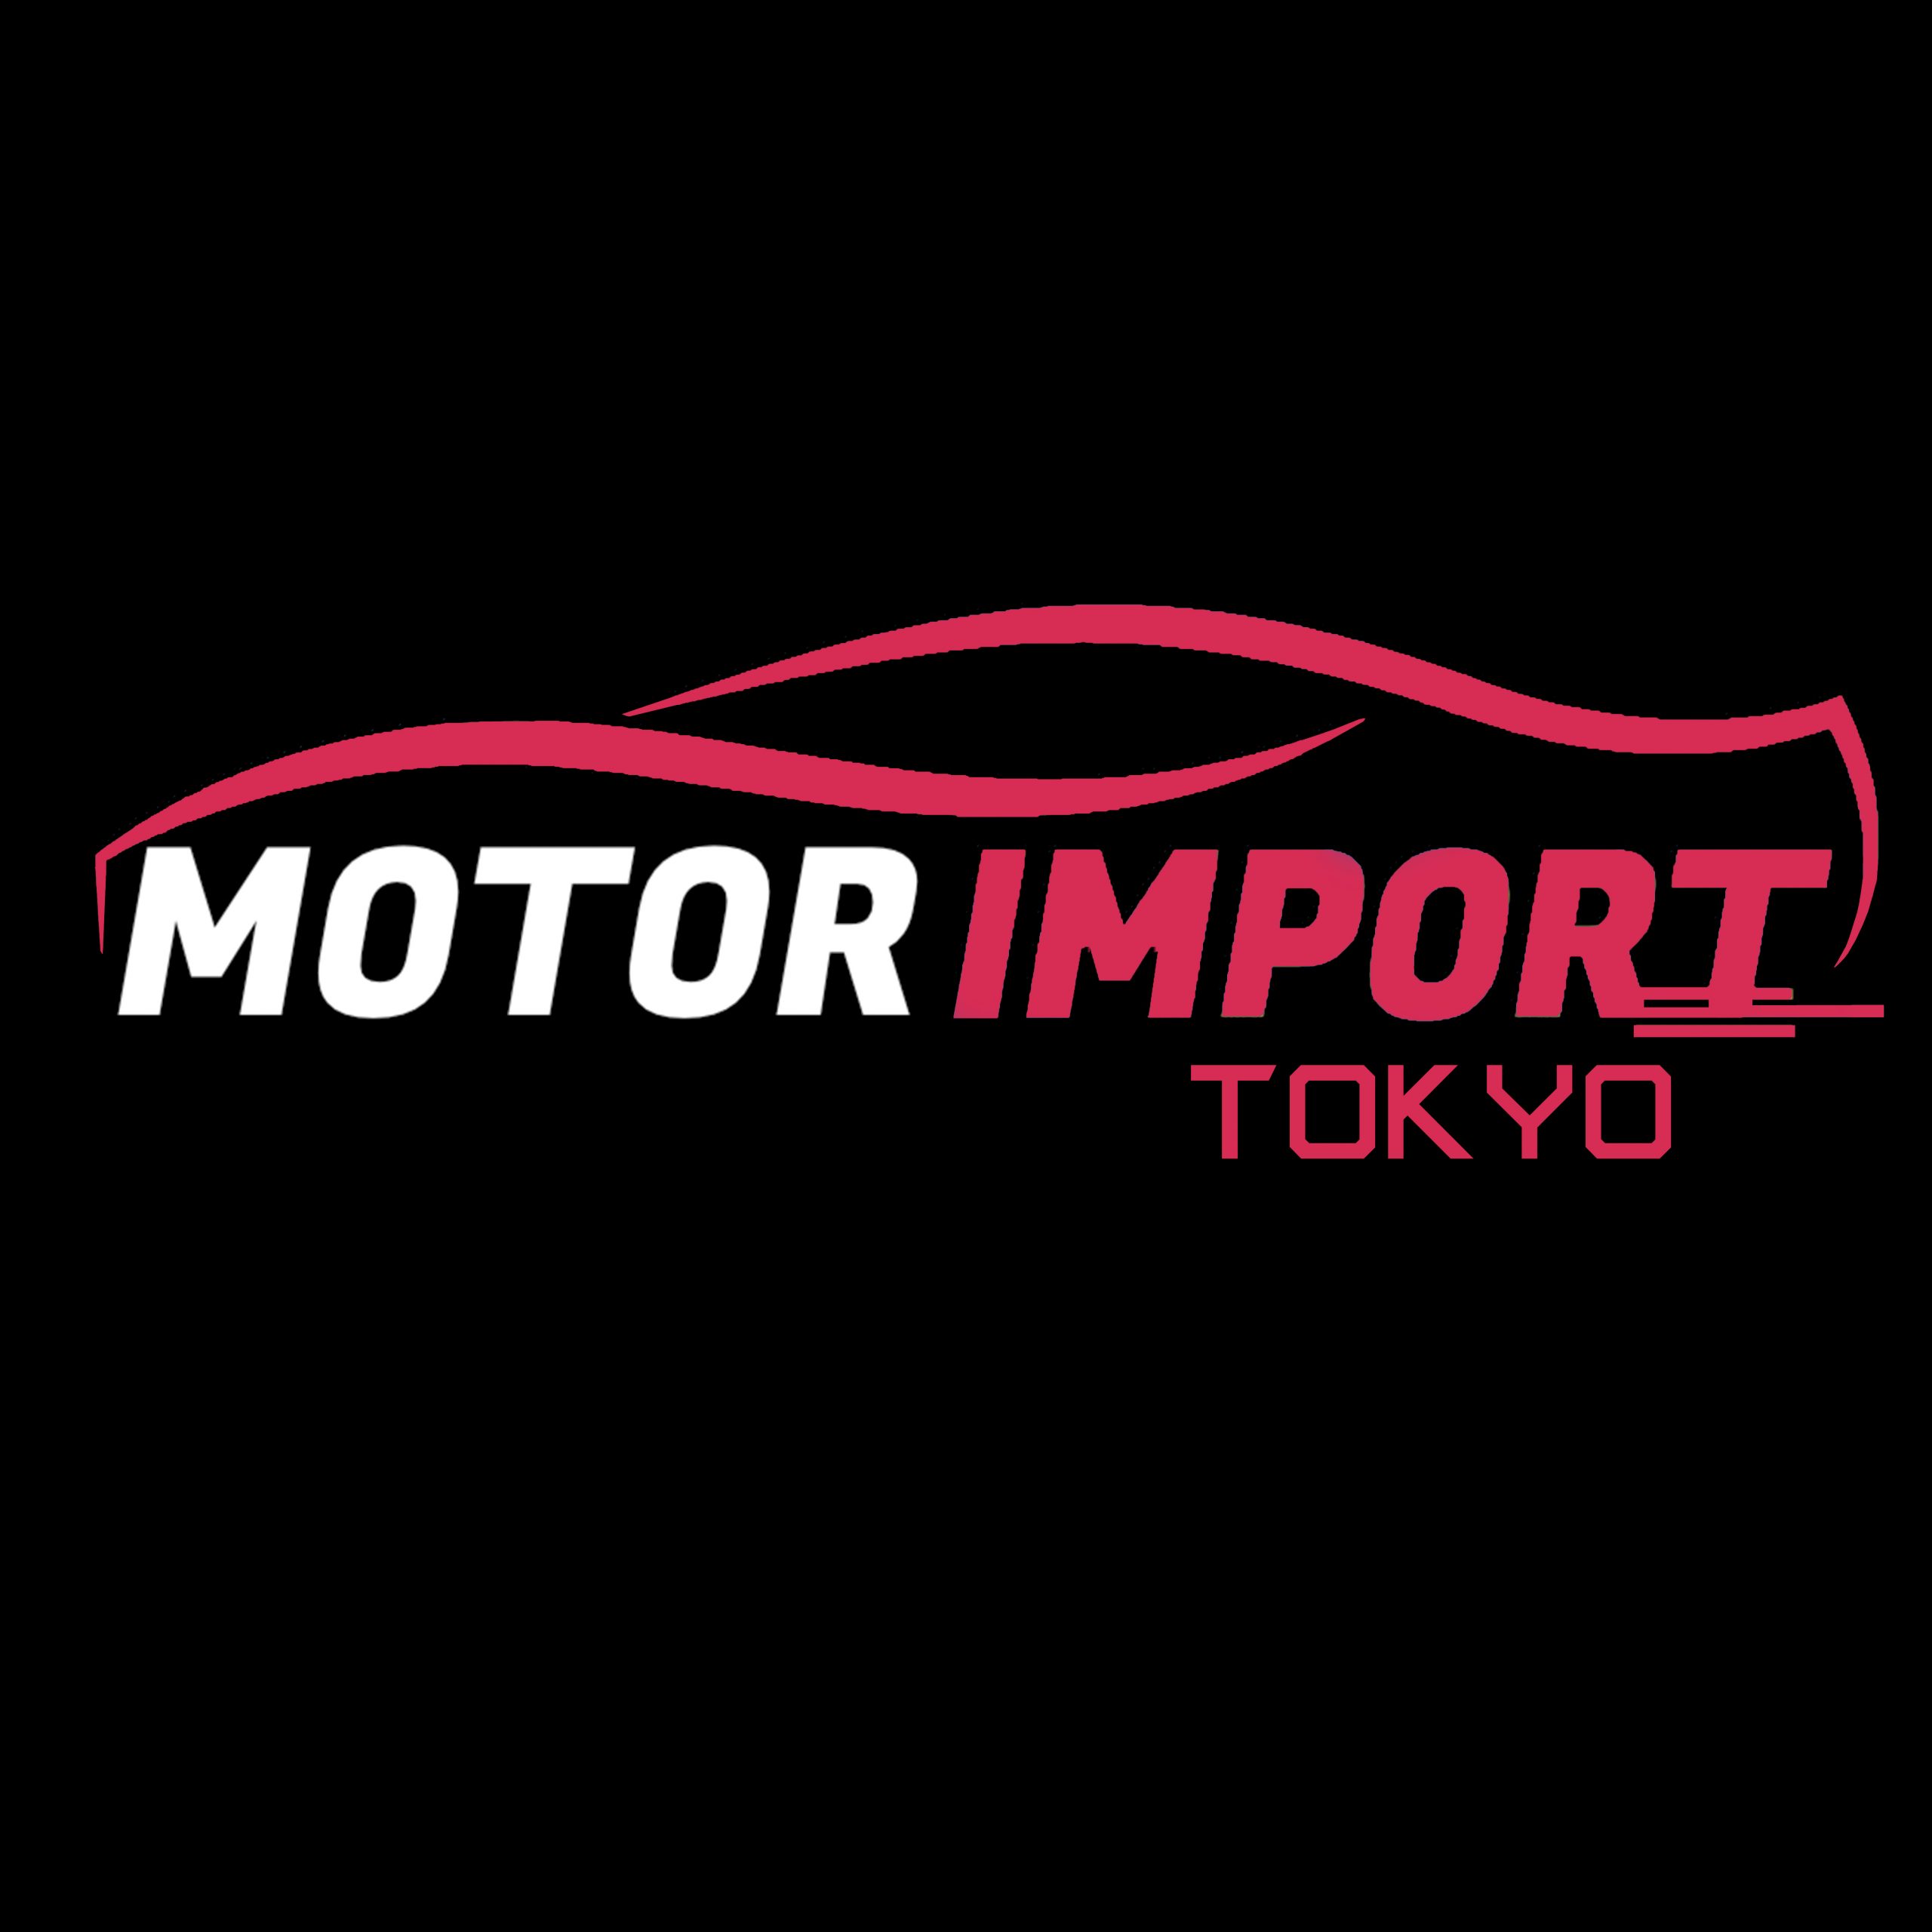 SQUARE EMPTY DUBAI in scala - FORD Giappone importazione auto dal Giappone FORD importazione veicolo Giappone motorimport Tokyo